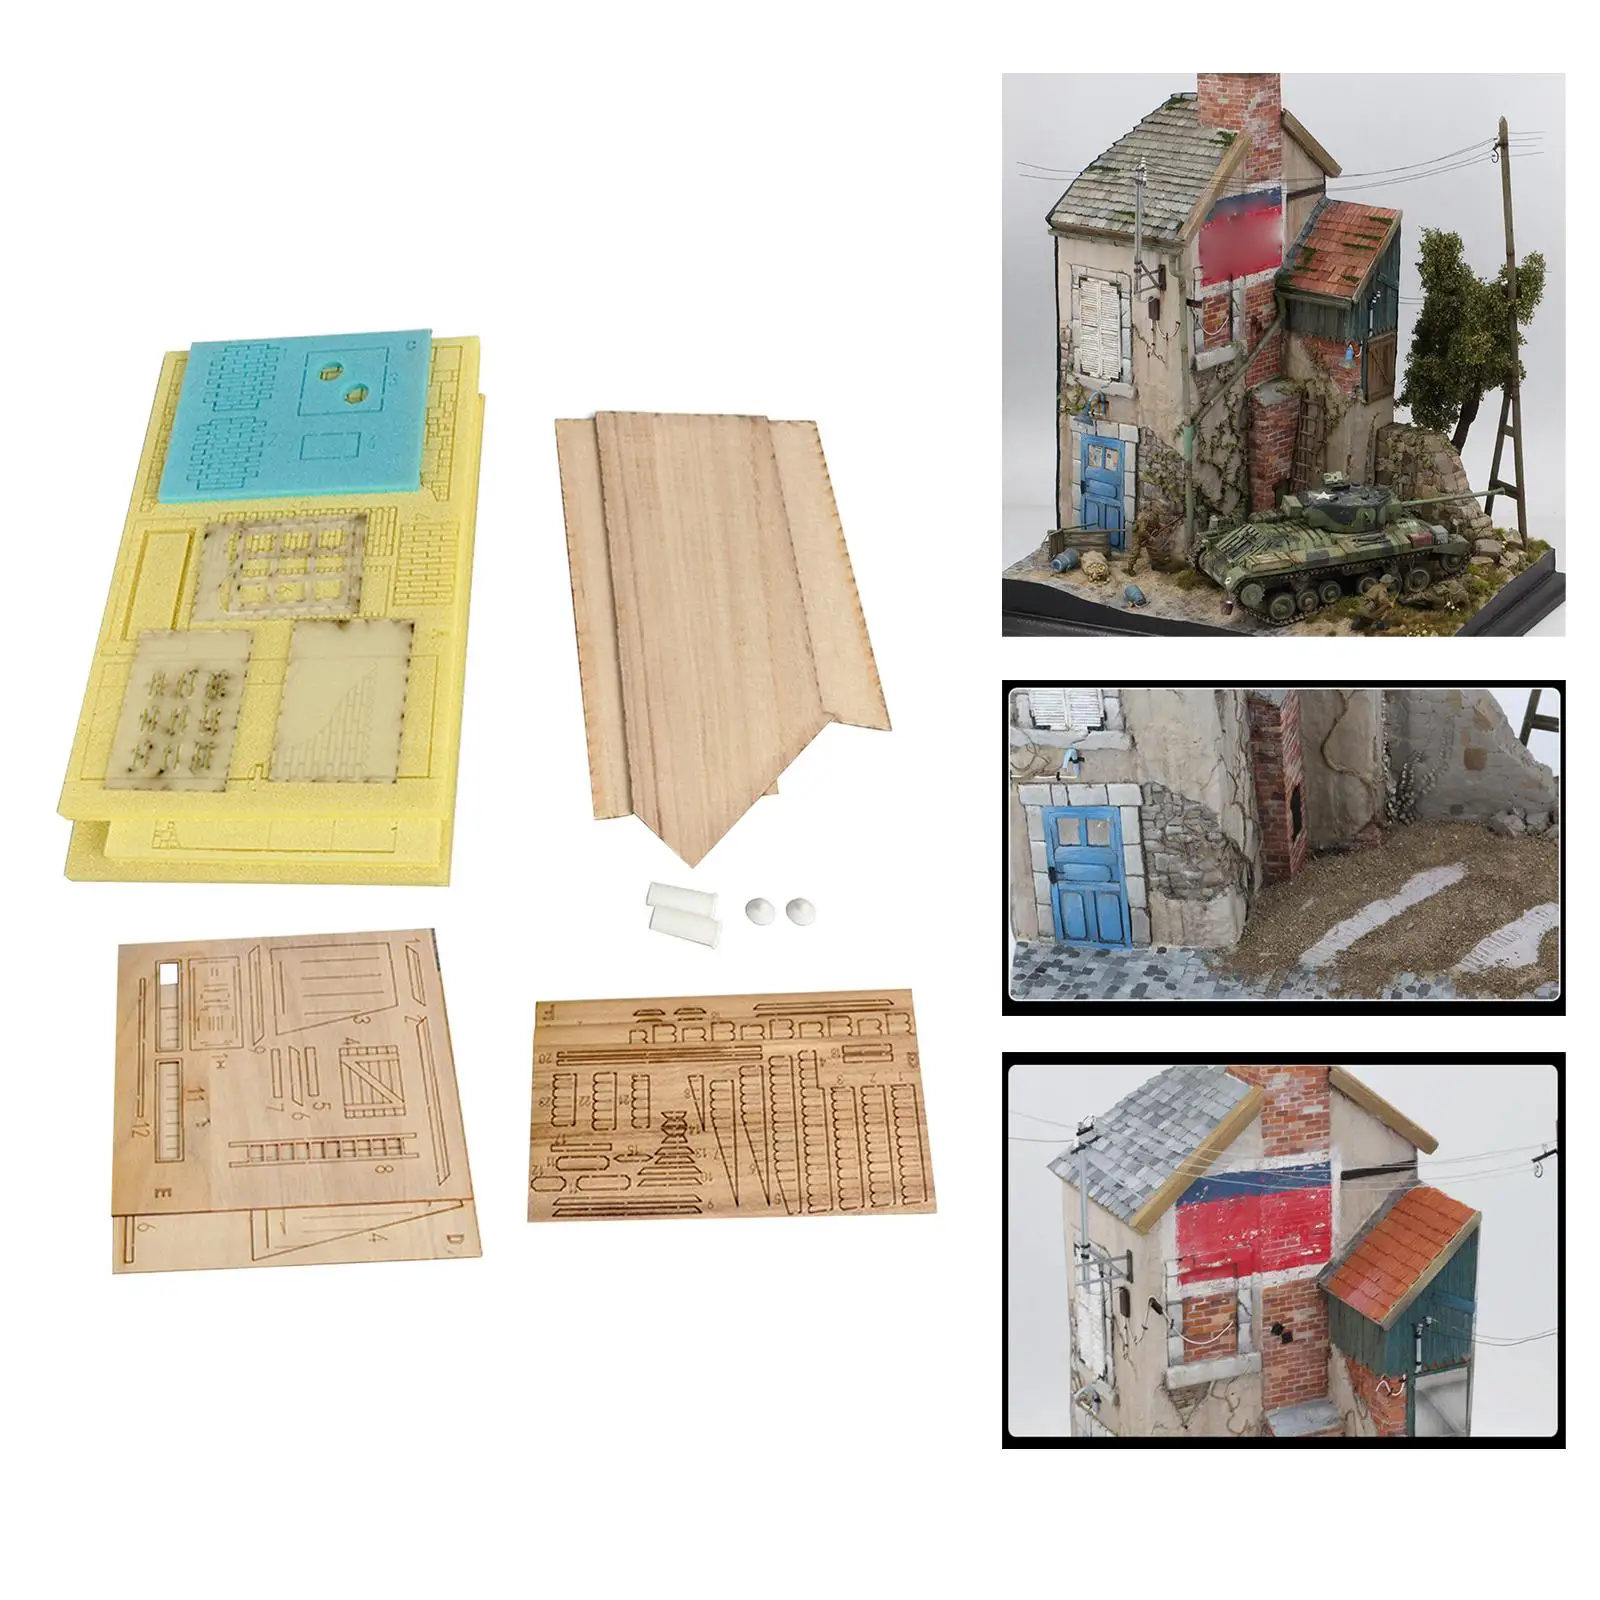 1/35 Scale Scene Architecture Landscape Wooden Diorama Building Model Kits